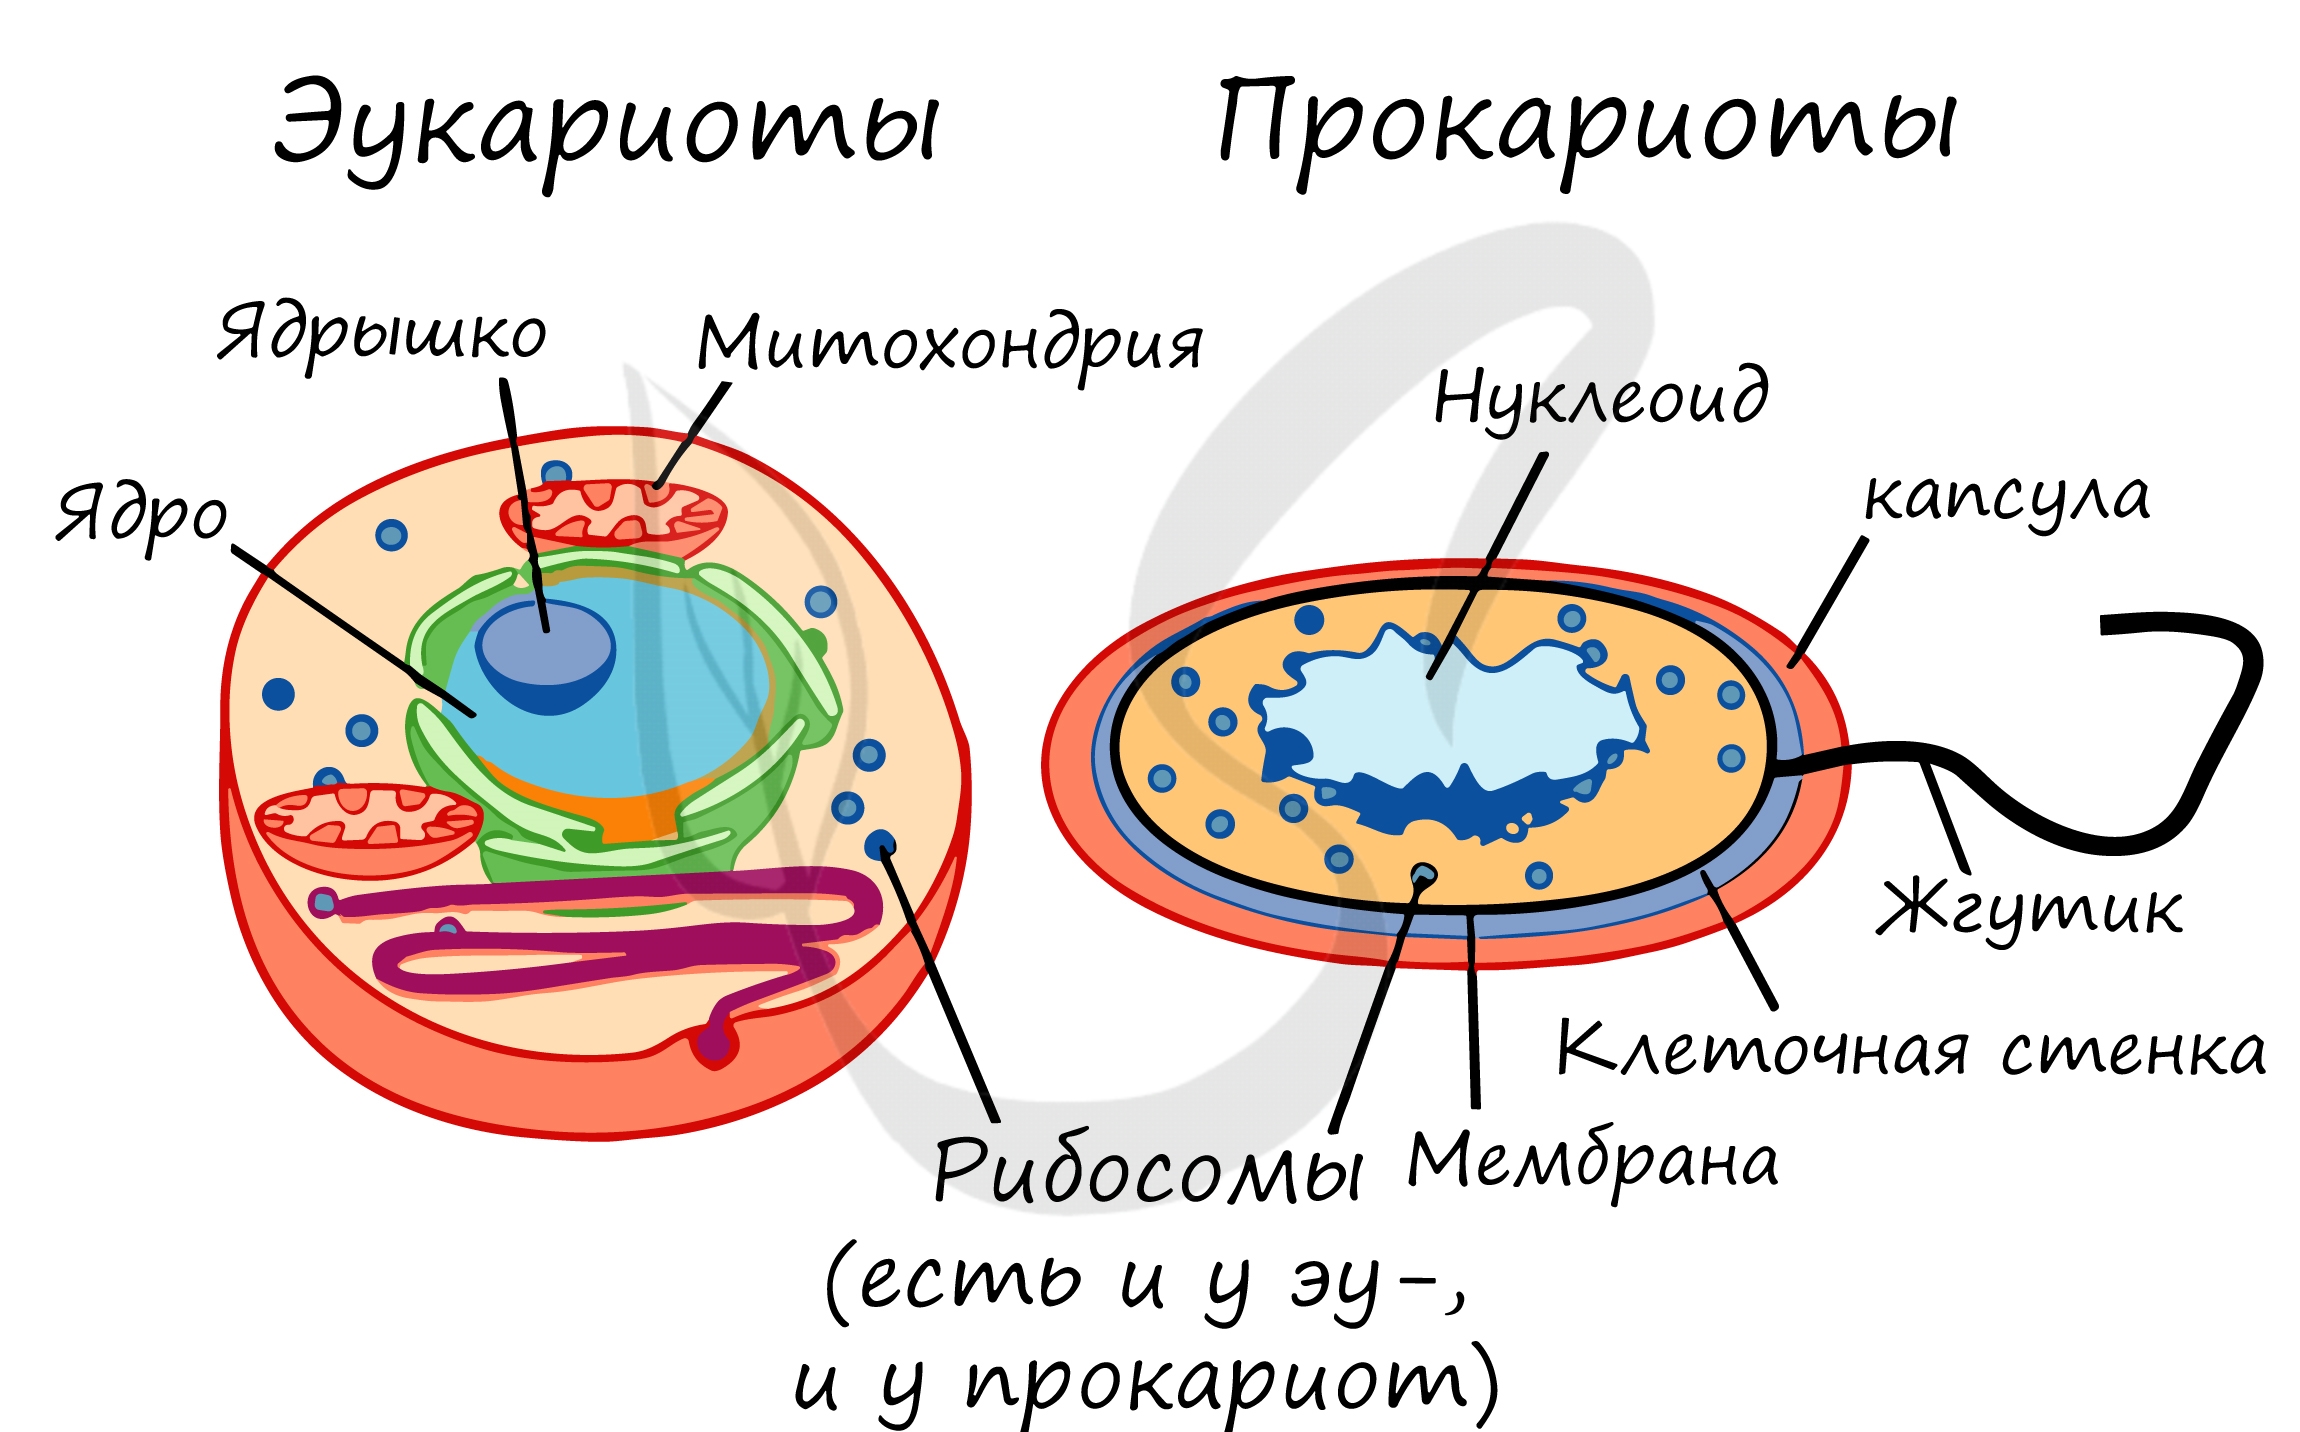 Есть ли у прокариотов. Строение клетки прокариот и эукариот. Строение бактерий прокариоты и эукариоты. Отличие прокариот от эукариот рисунок. Прокариотическая клетка и эукариотическая клетка строение.